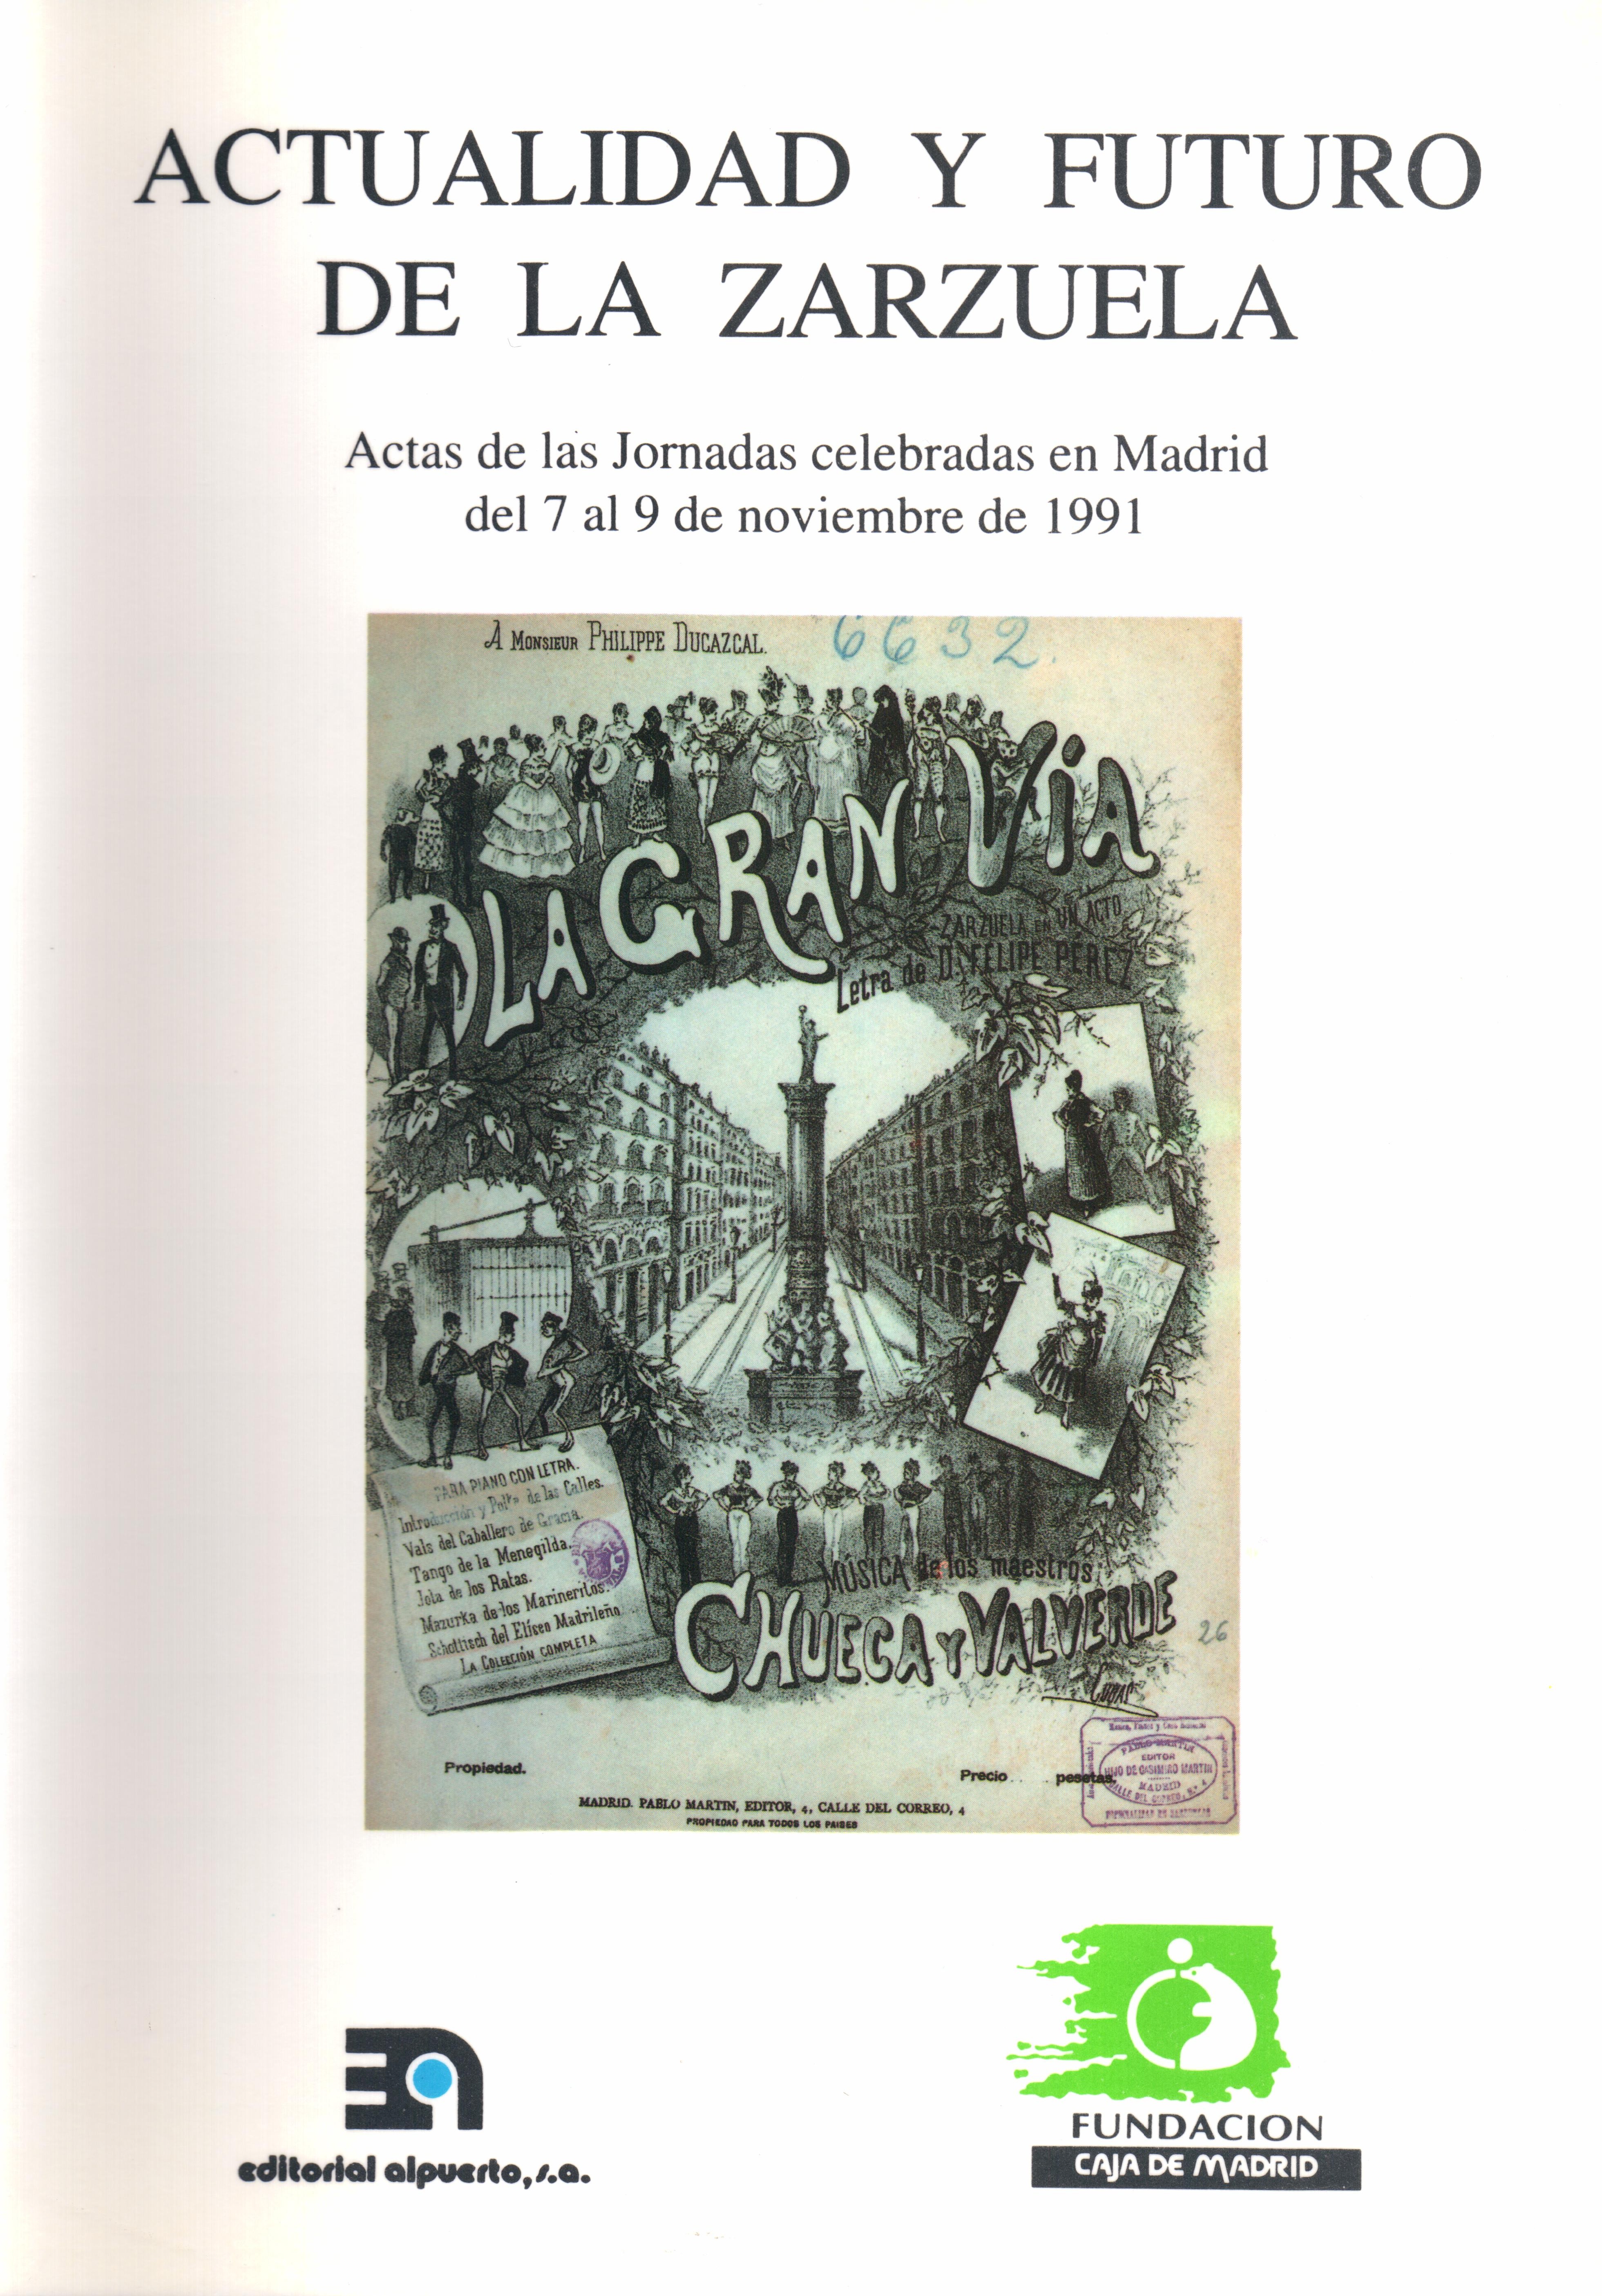 Actualidad y futuro de la zarzuela
Actas de las Jornadas celebradas en Madrid del 7 al 9 de noviembre de 1991